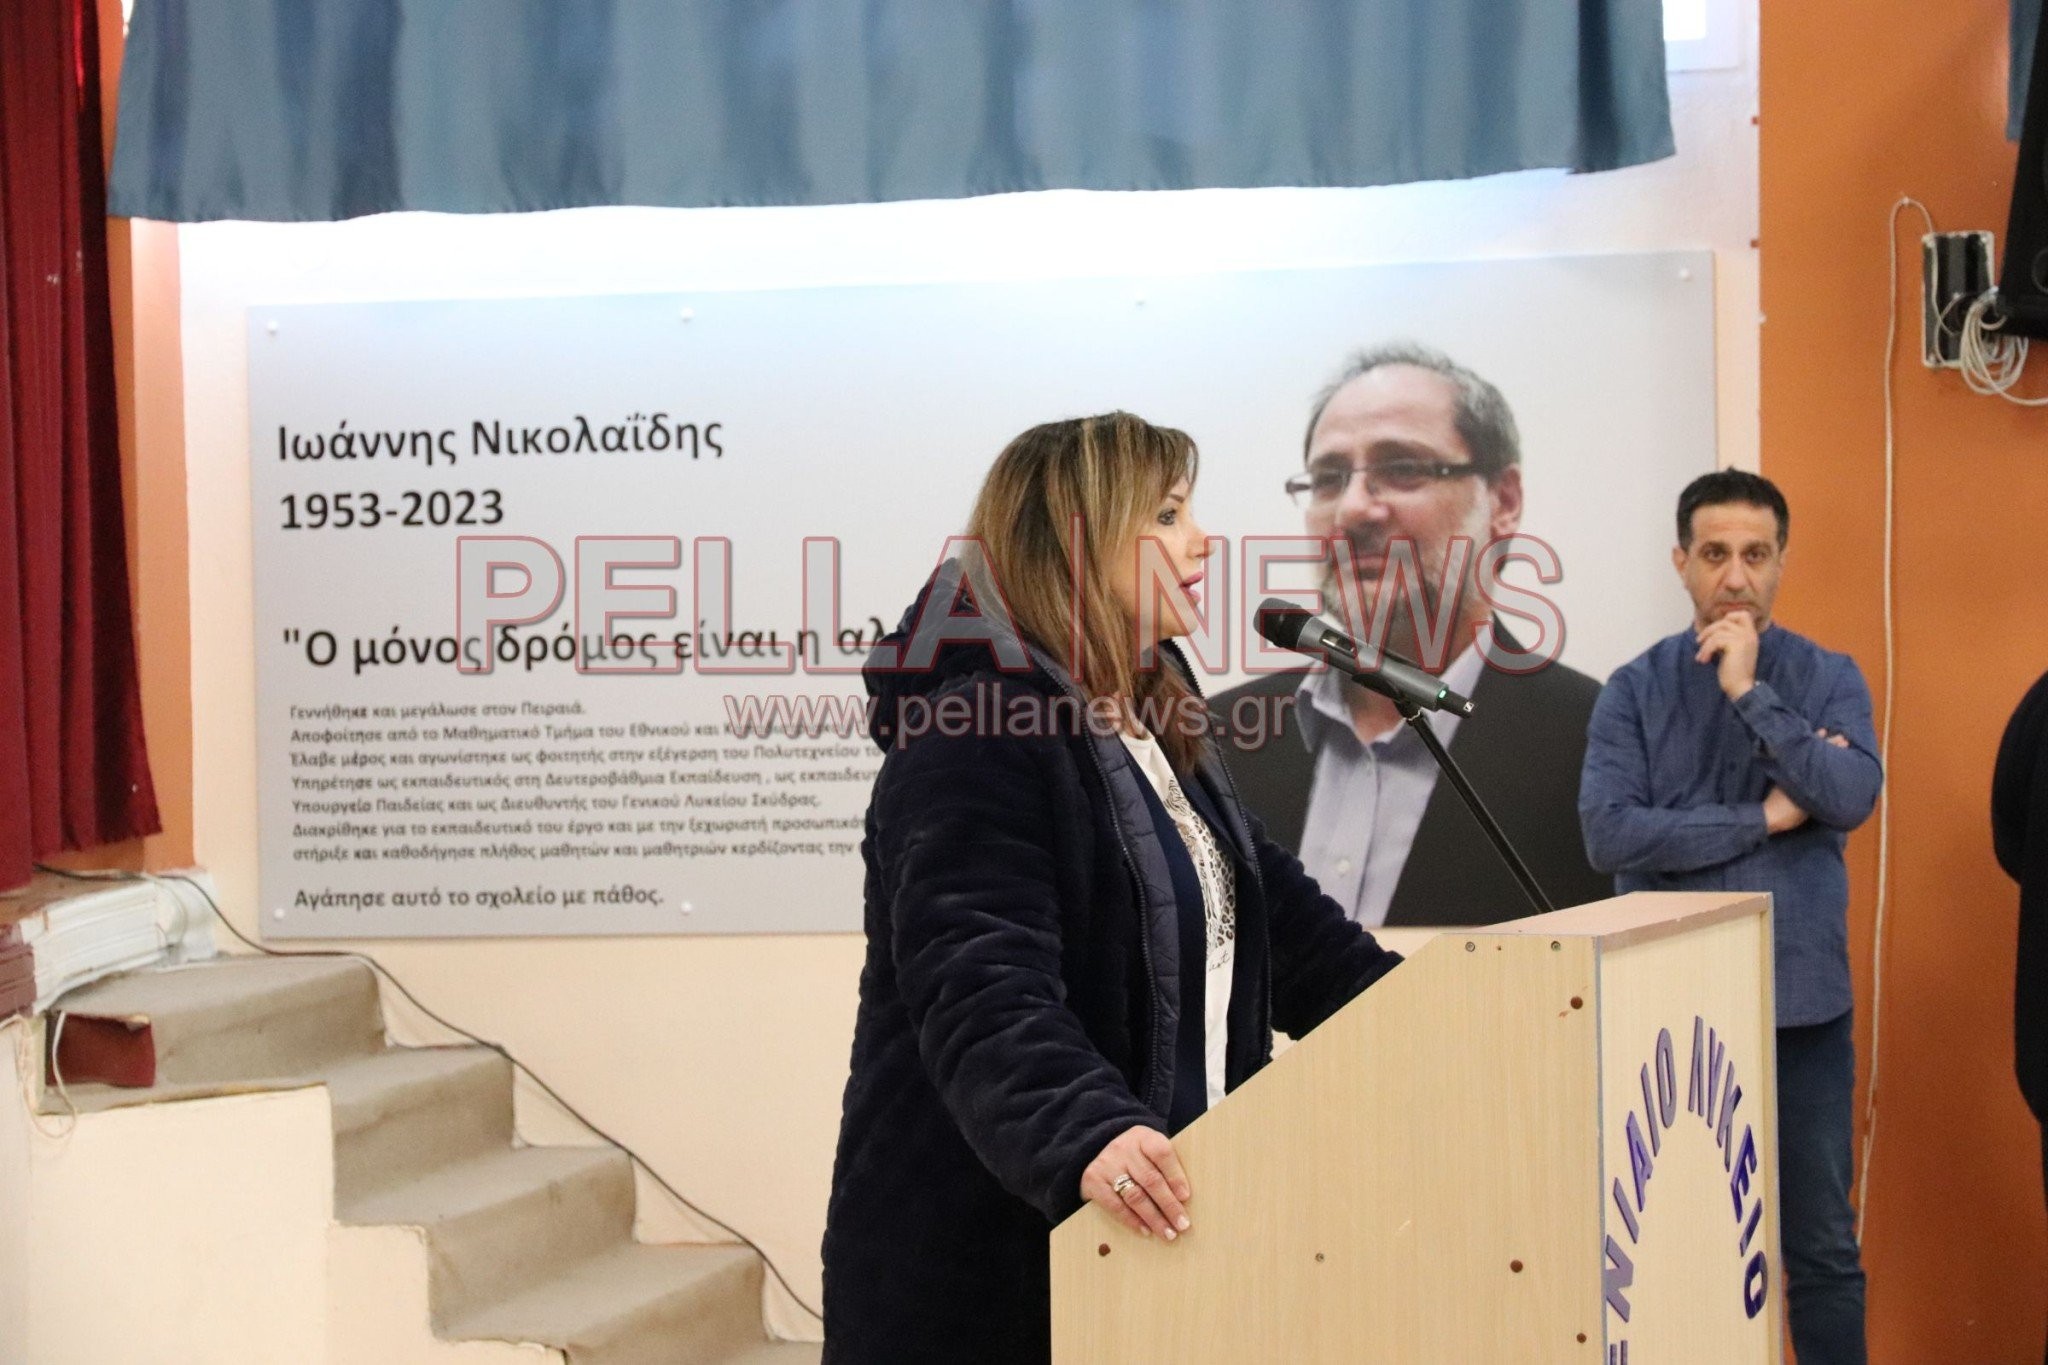 ΓΕΛ Σκύδρας: Εκδήλωση στη μνήμη του αγαπητού καθηγητή Ιωάννη Νικολαΐδη